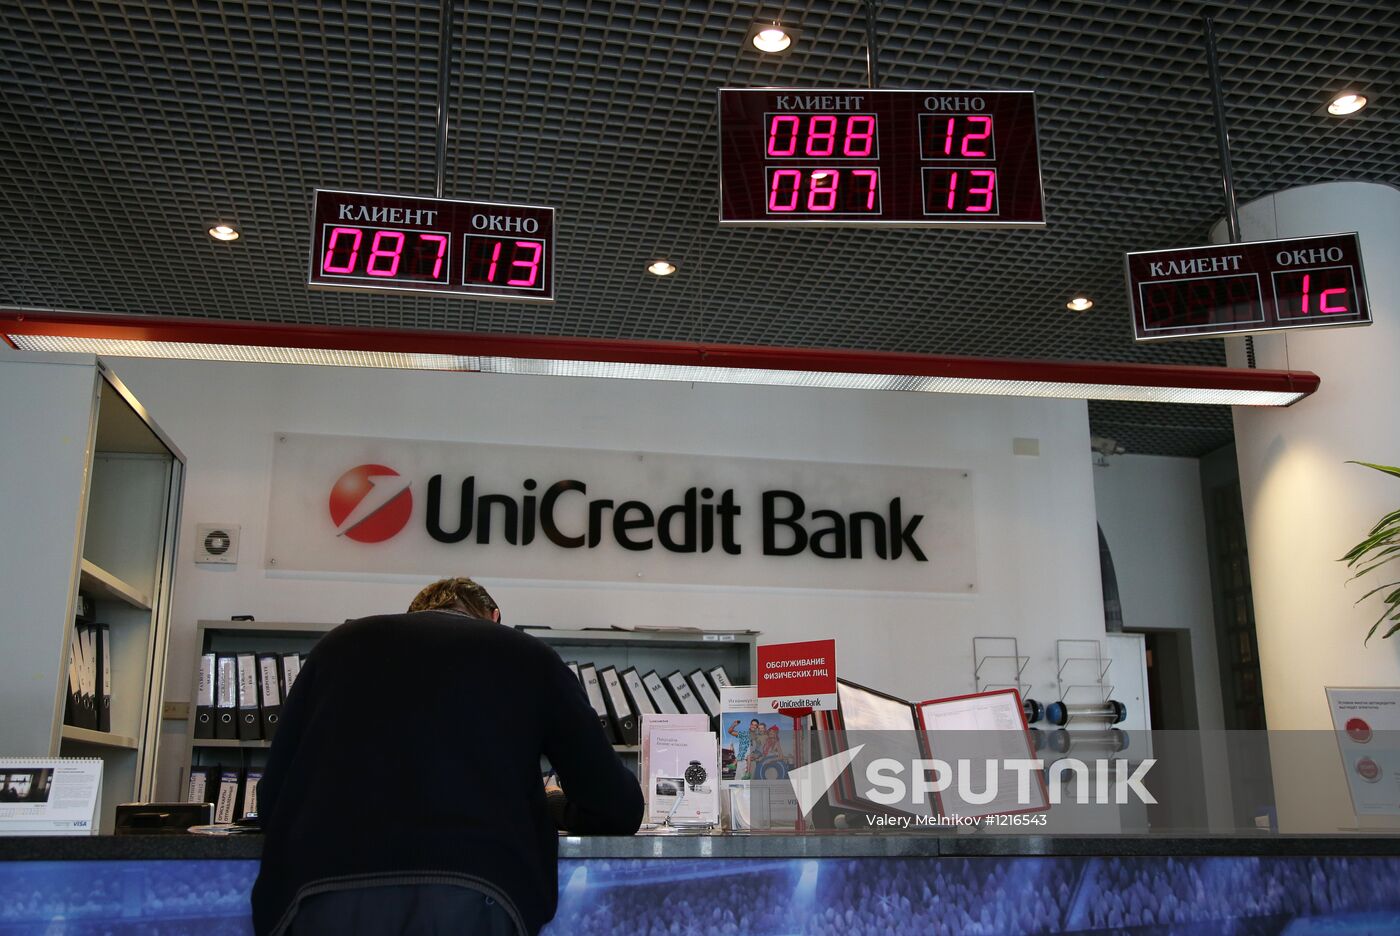 Work of UniCredit Bank